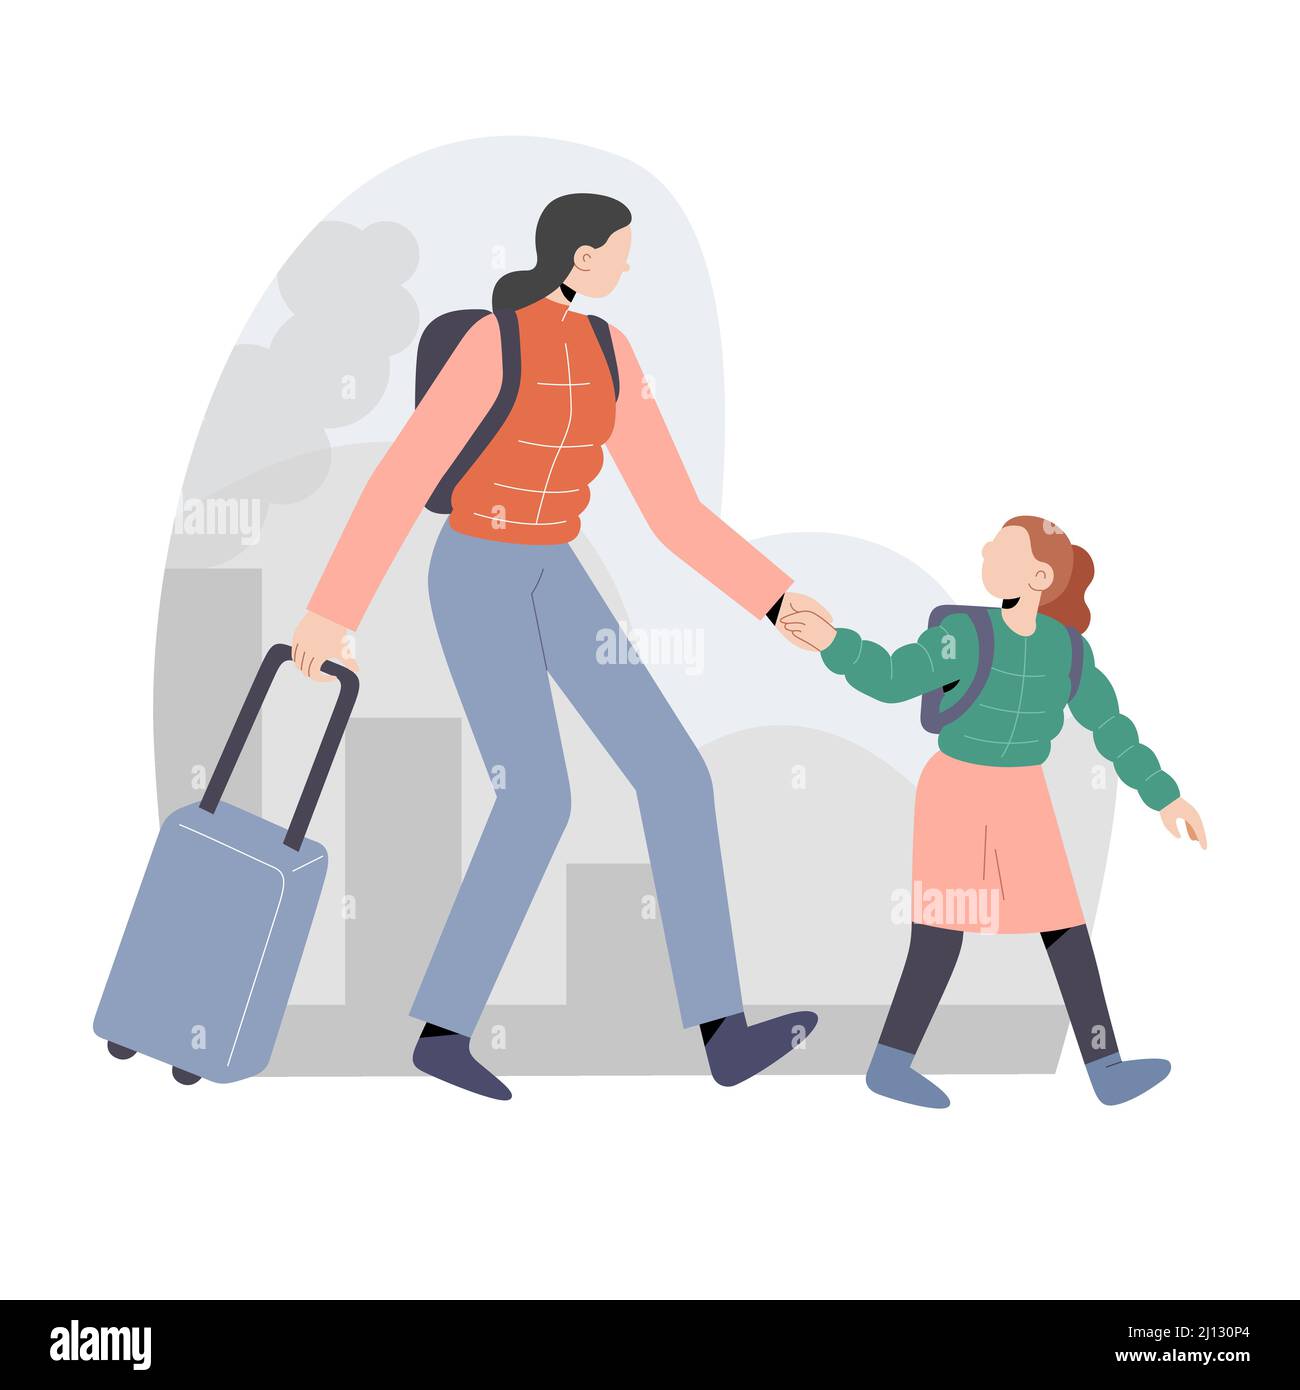 Weibliche Flüchtlinge, die vor Kriegskonflikten fliehen, junge Frau und Tochter, die vor Kriegskonflikten fliehen, die Hände halten, einen Koffer ziehen, editierbarer Vektor Stock Vektor